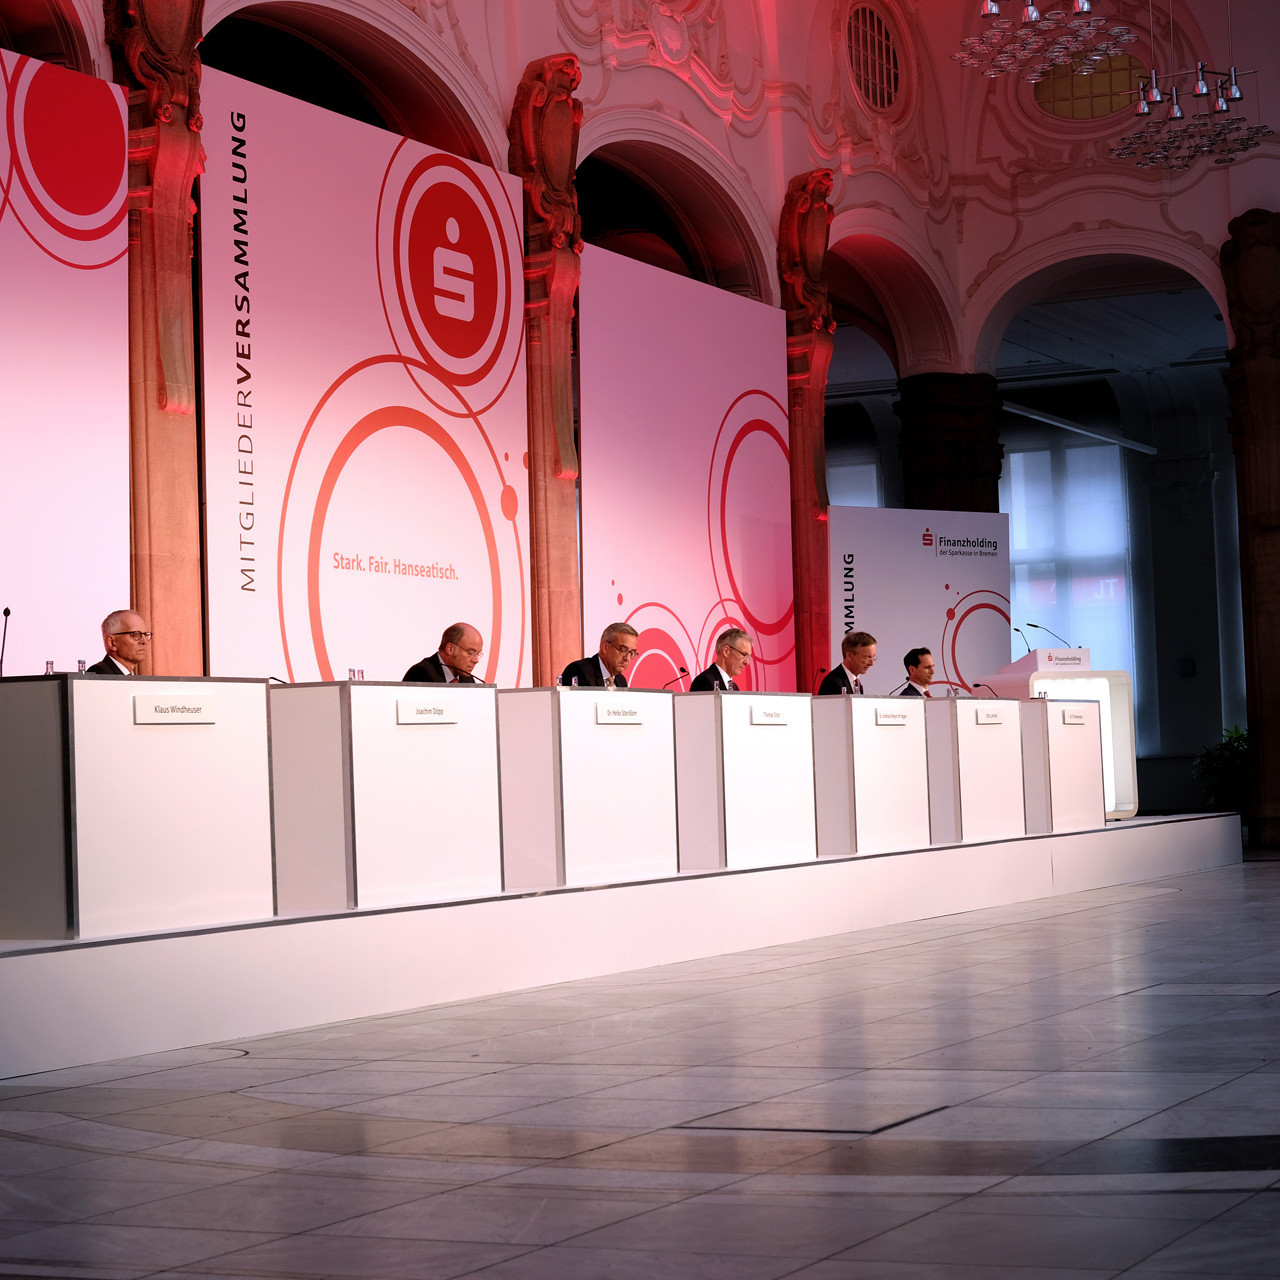 Die Sparkasse Bremen Mitgliederversammlung: Blick auf das Podium auf dem sieben Personen sitzen, jeder Corona Konform mit 1.5 Meter Abstand.